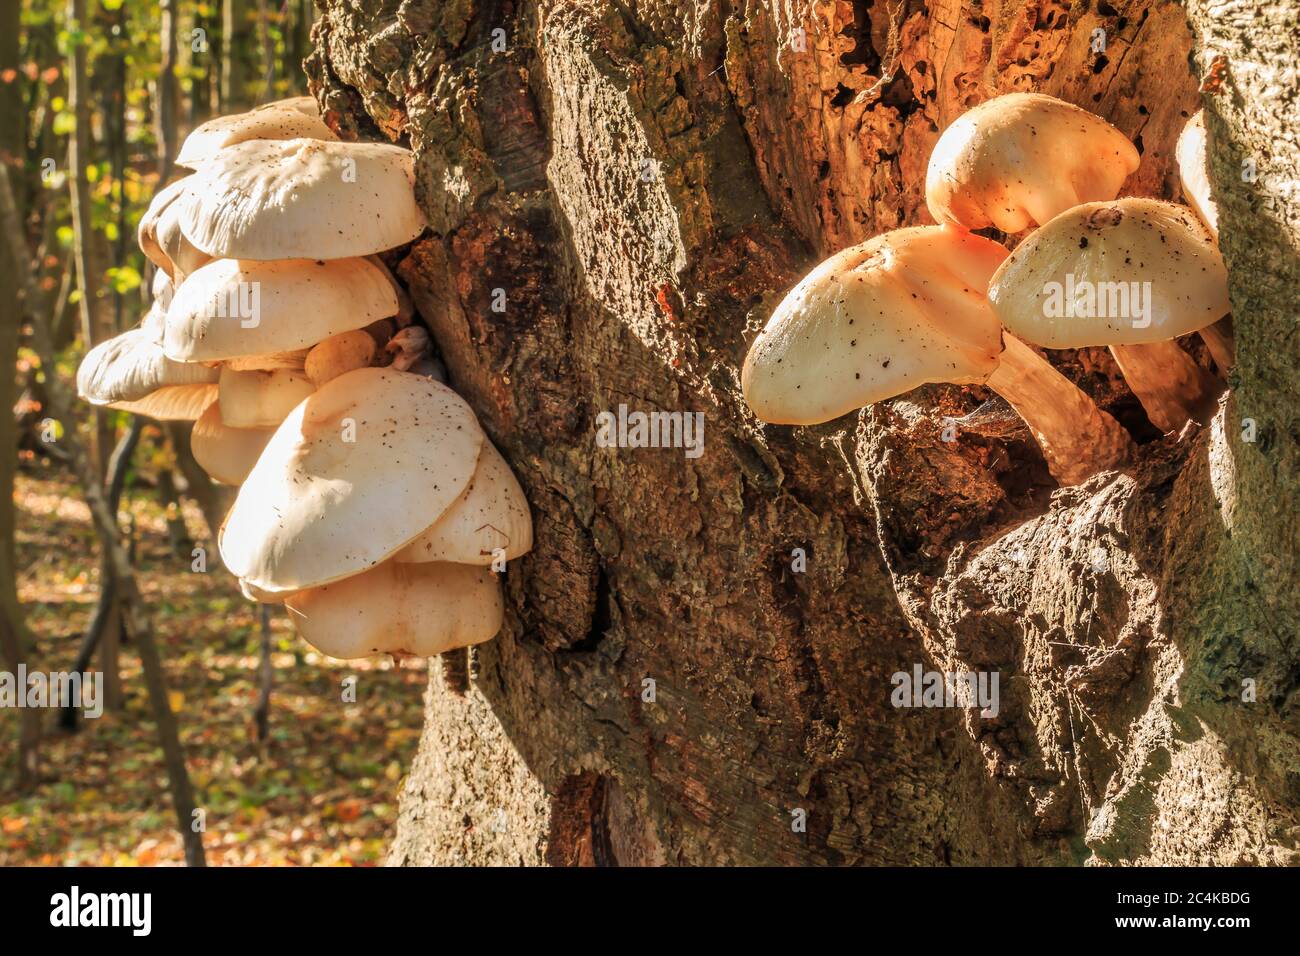 Austernpilze auf einem Loch auf einem Baumstamm im Herbst. Mehrere Pflanzen wachsen auf einem Laubbaum. Pilze mit weißer Pilzkappe auf dem braunen Baum Stockfoto